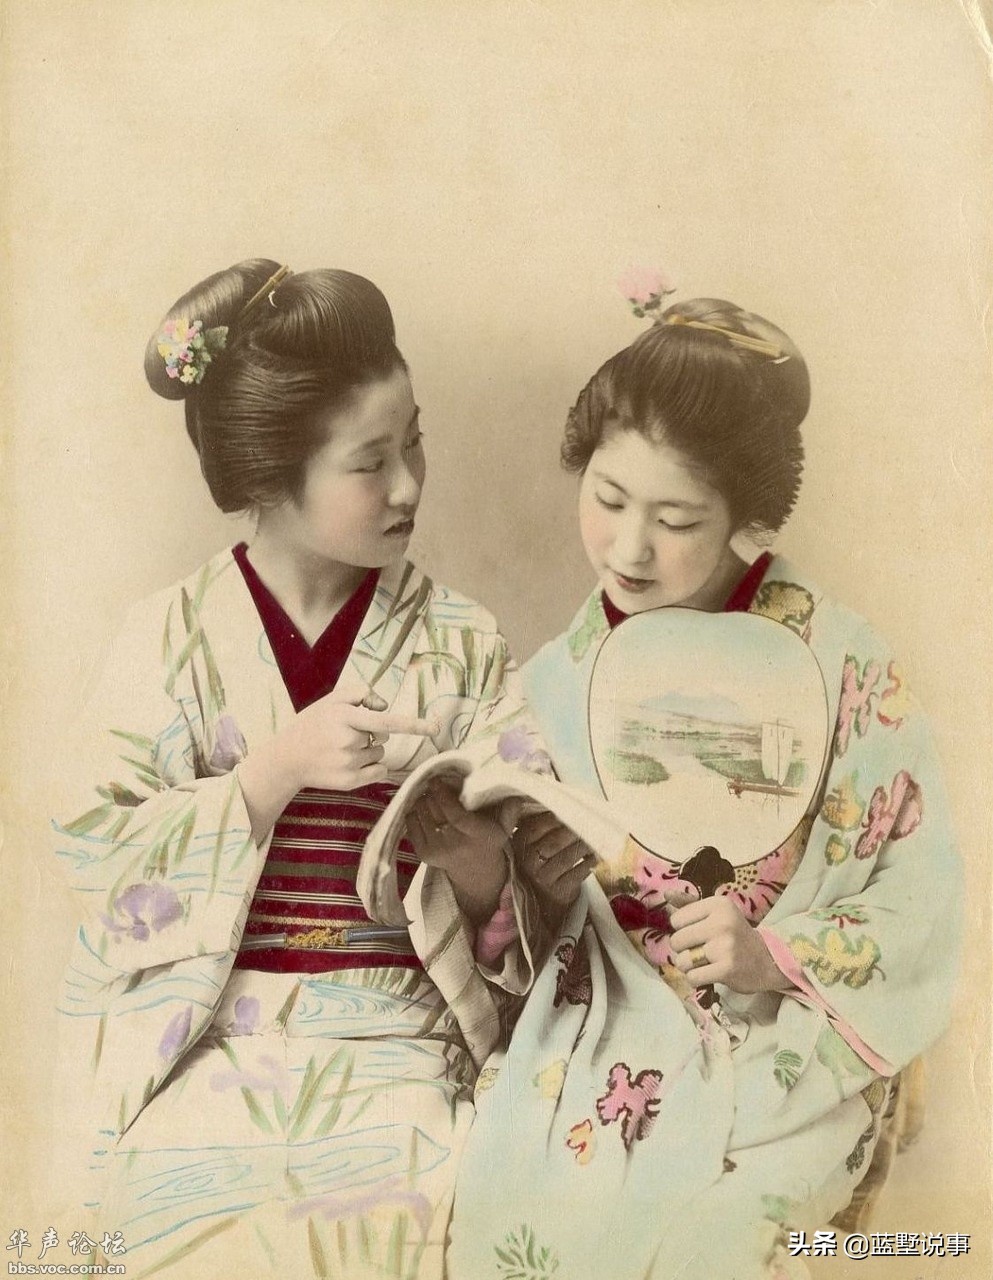 三十張老照片 日本明治年間的景色人物 昭憲皇太后被稱為天狗娘 藍墅説事 Mdeditor